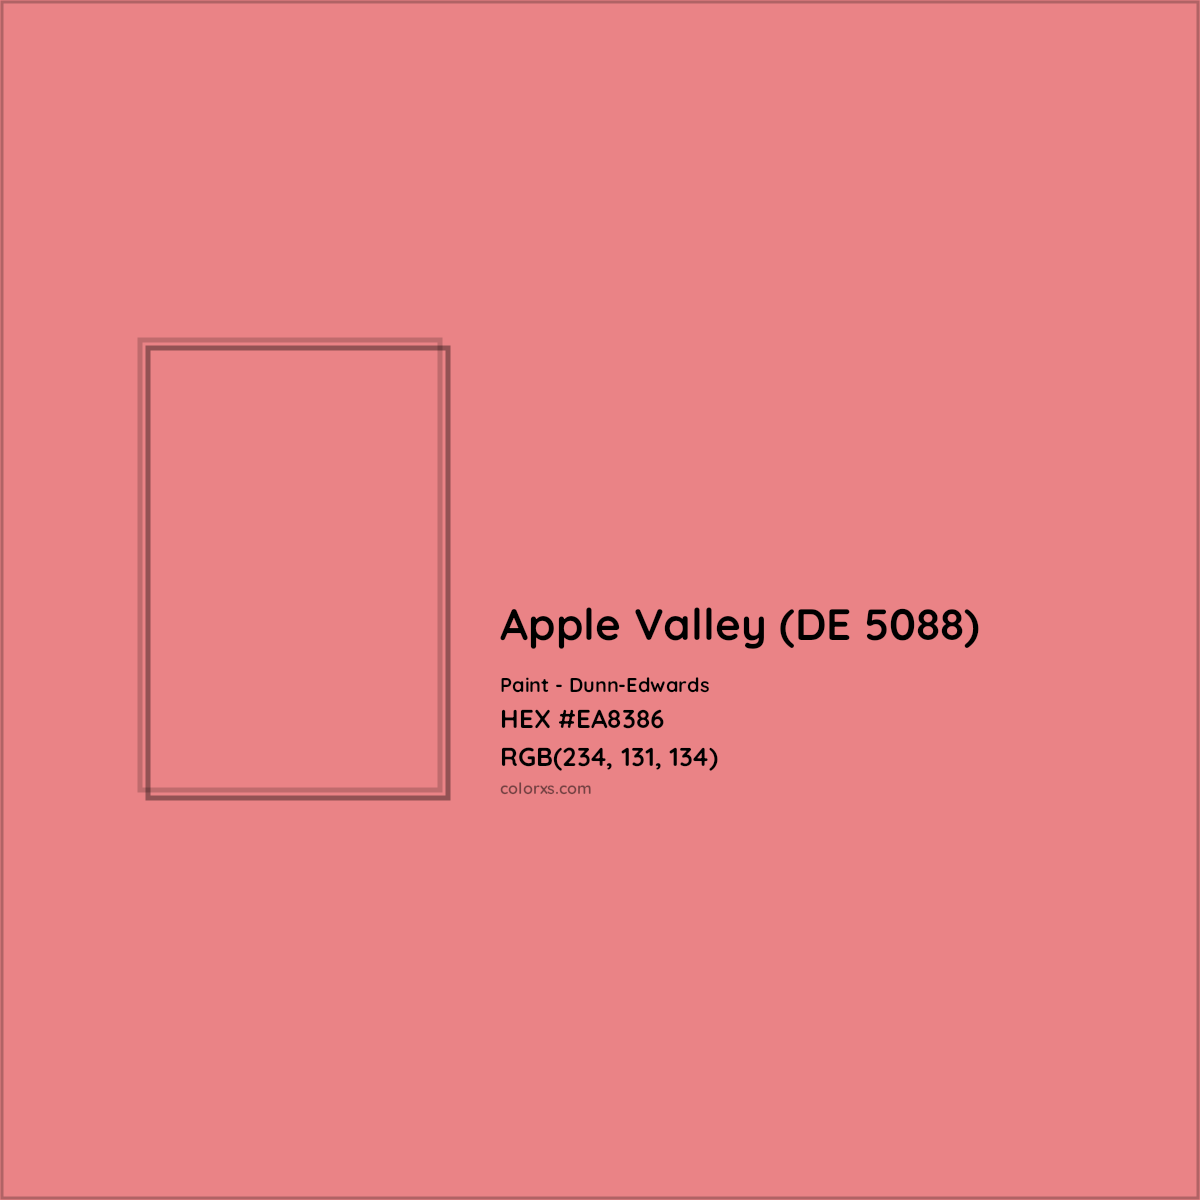 HEX #EA8386 Apple Valley (DE 5088) Paint Dunn-Edwards - Color Code